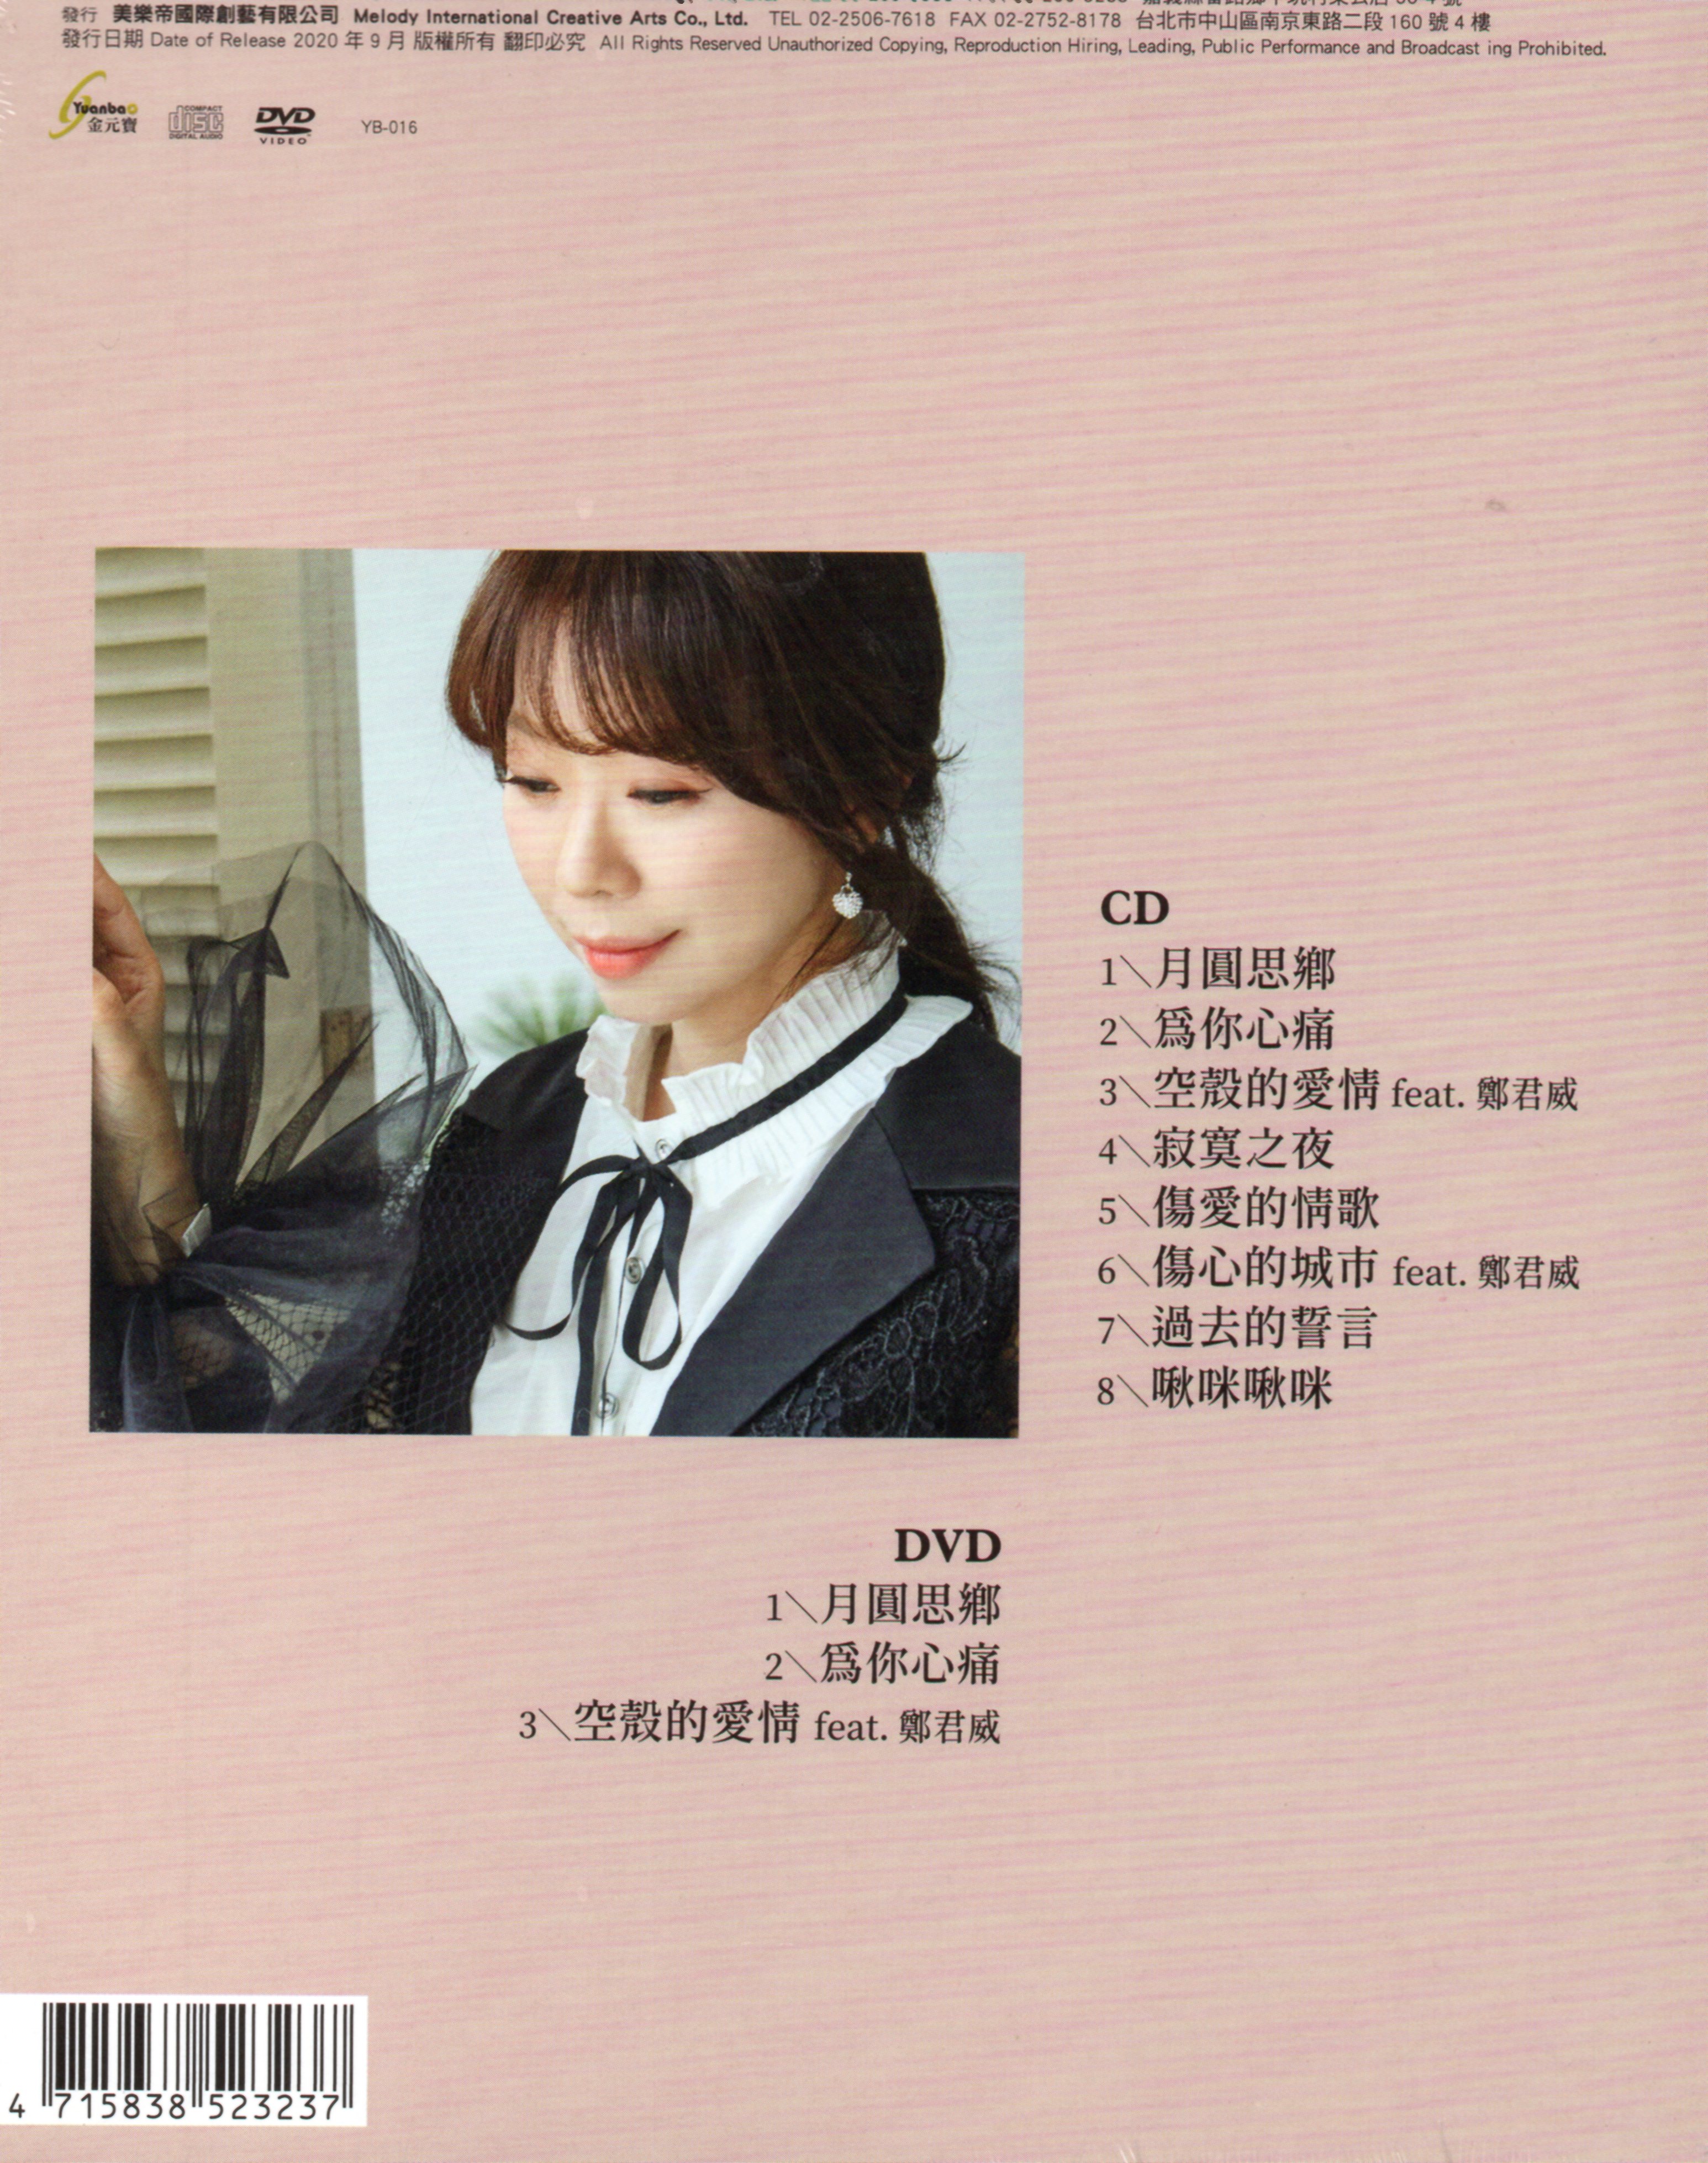 甲子慧-月圓思鄉CD(金元寶)(mega) MI1602850174